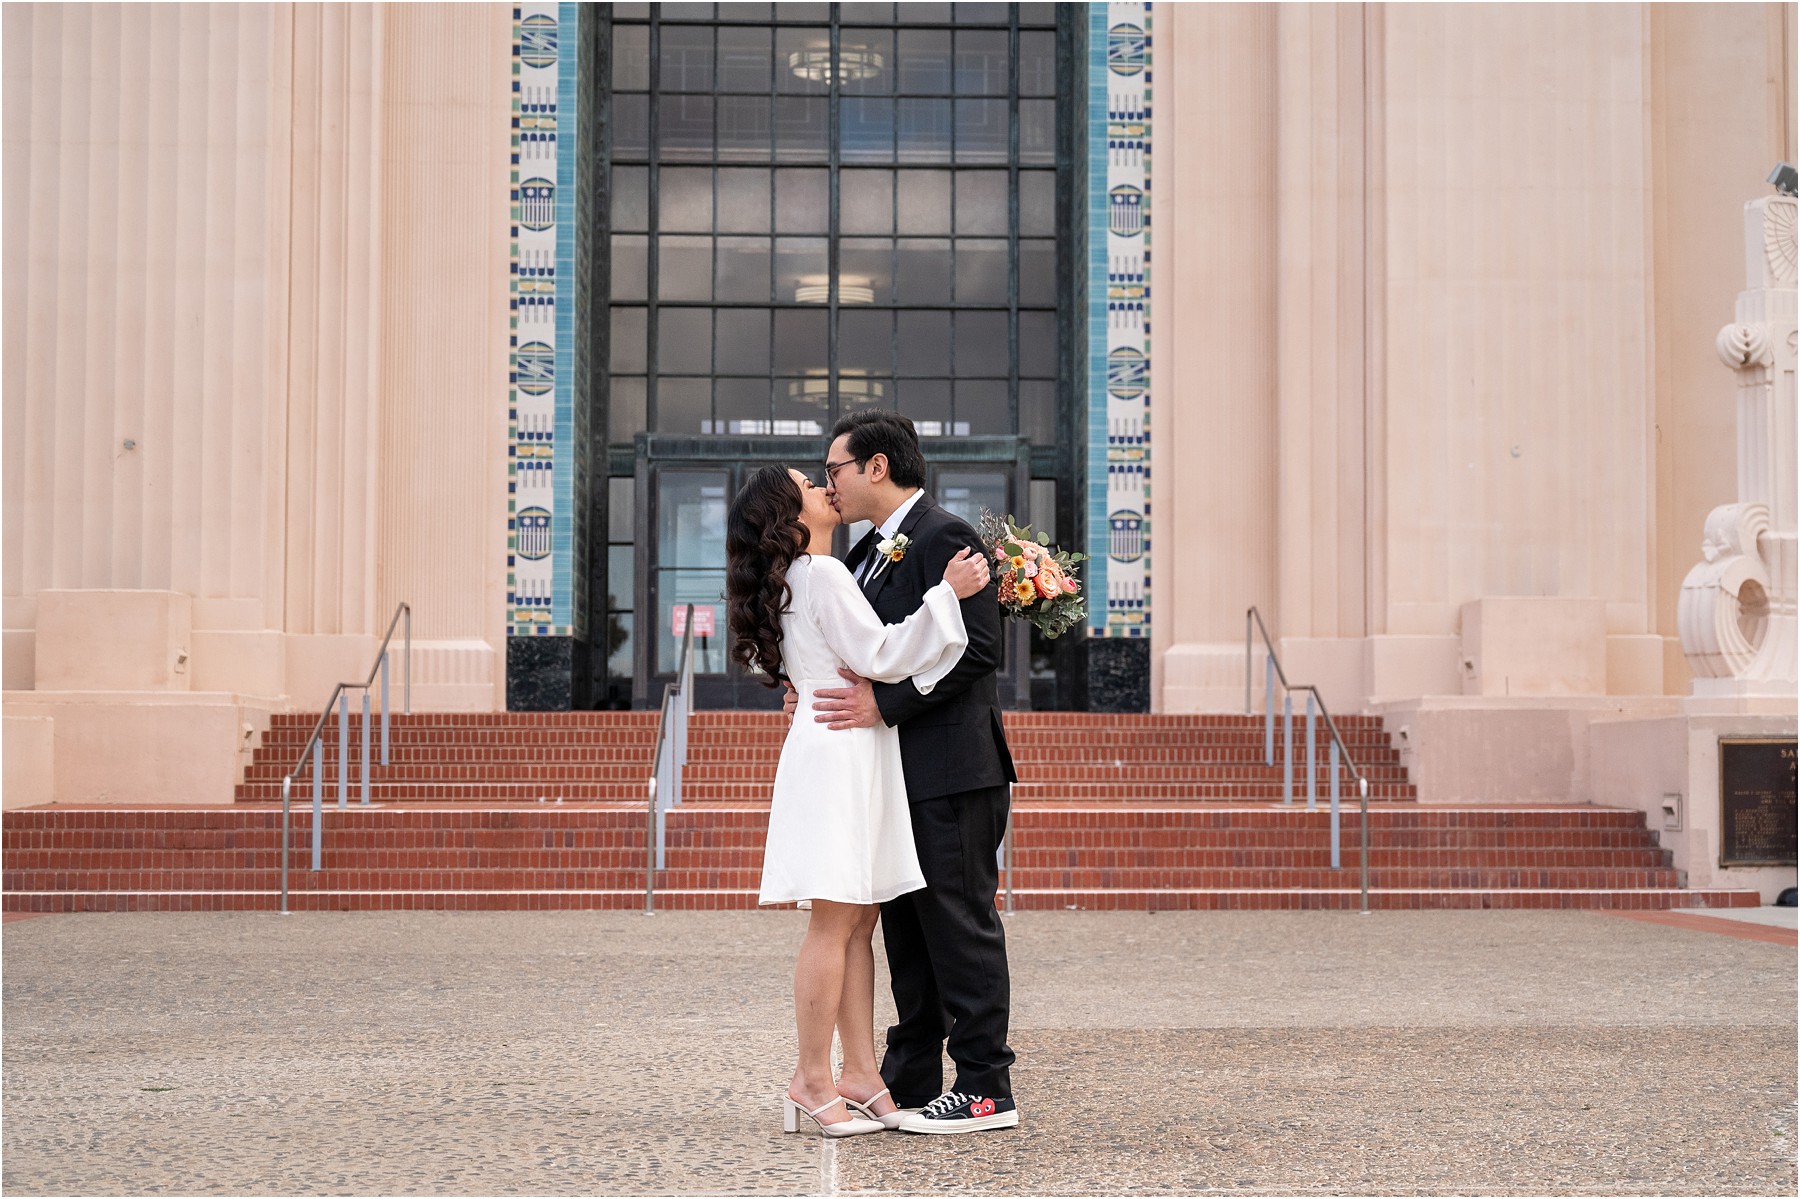 San Diego Courthouse wedding photos